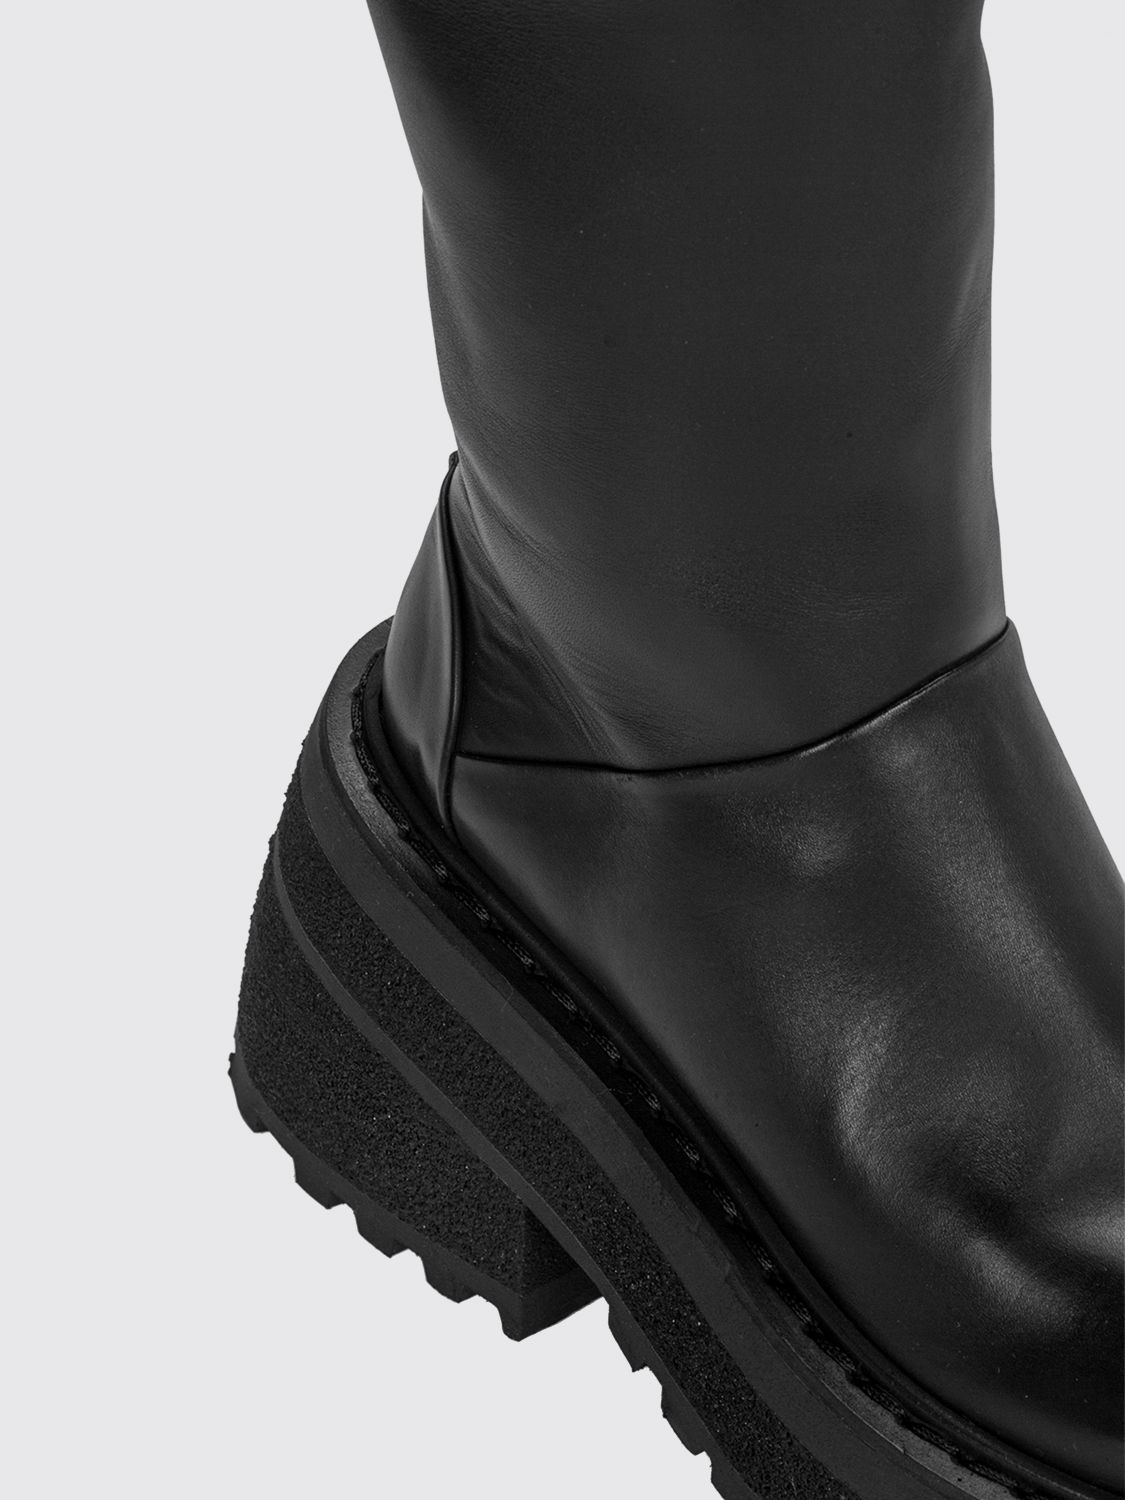 Femme Chaussures Bottes Bottes hauteur genou Bottes Marsèll en coloris Noir 